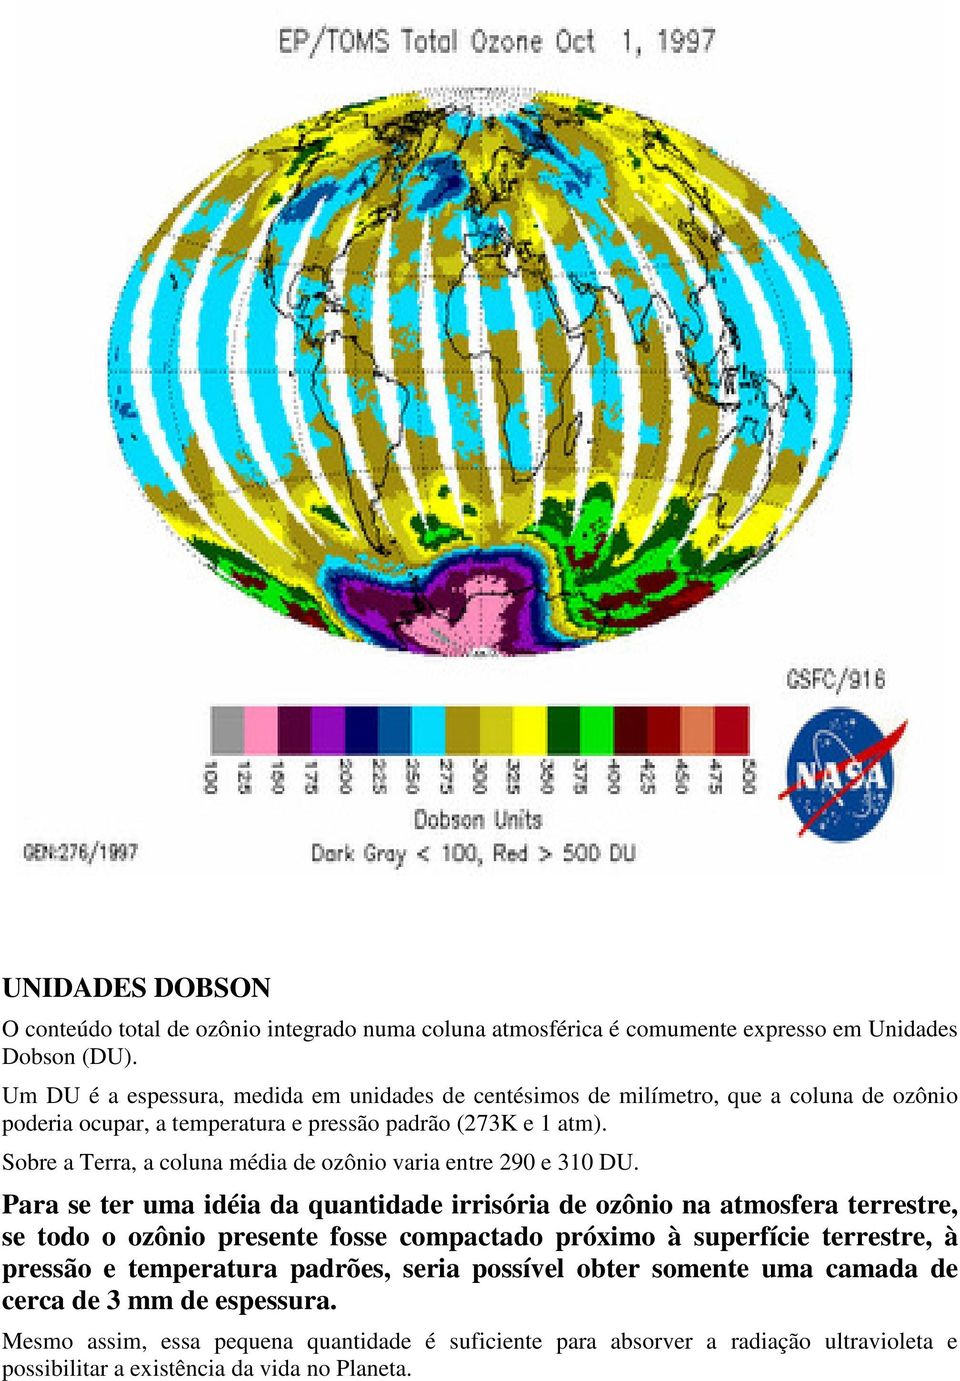 Sobre a Terra, a coluna média de ozônio varia entre 290 e 310 DU.